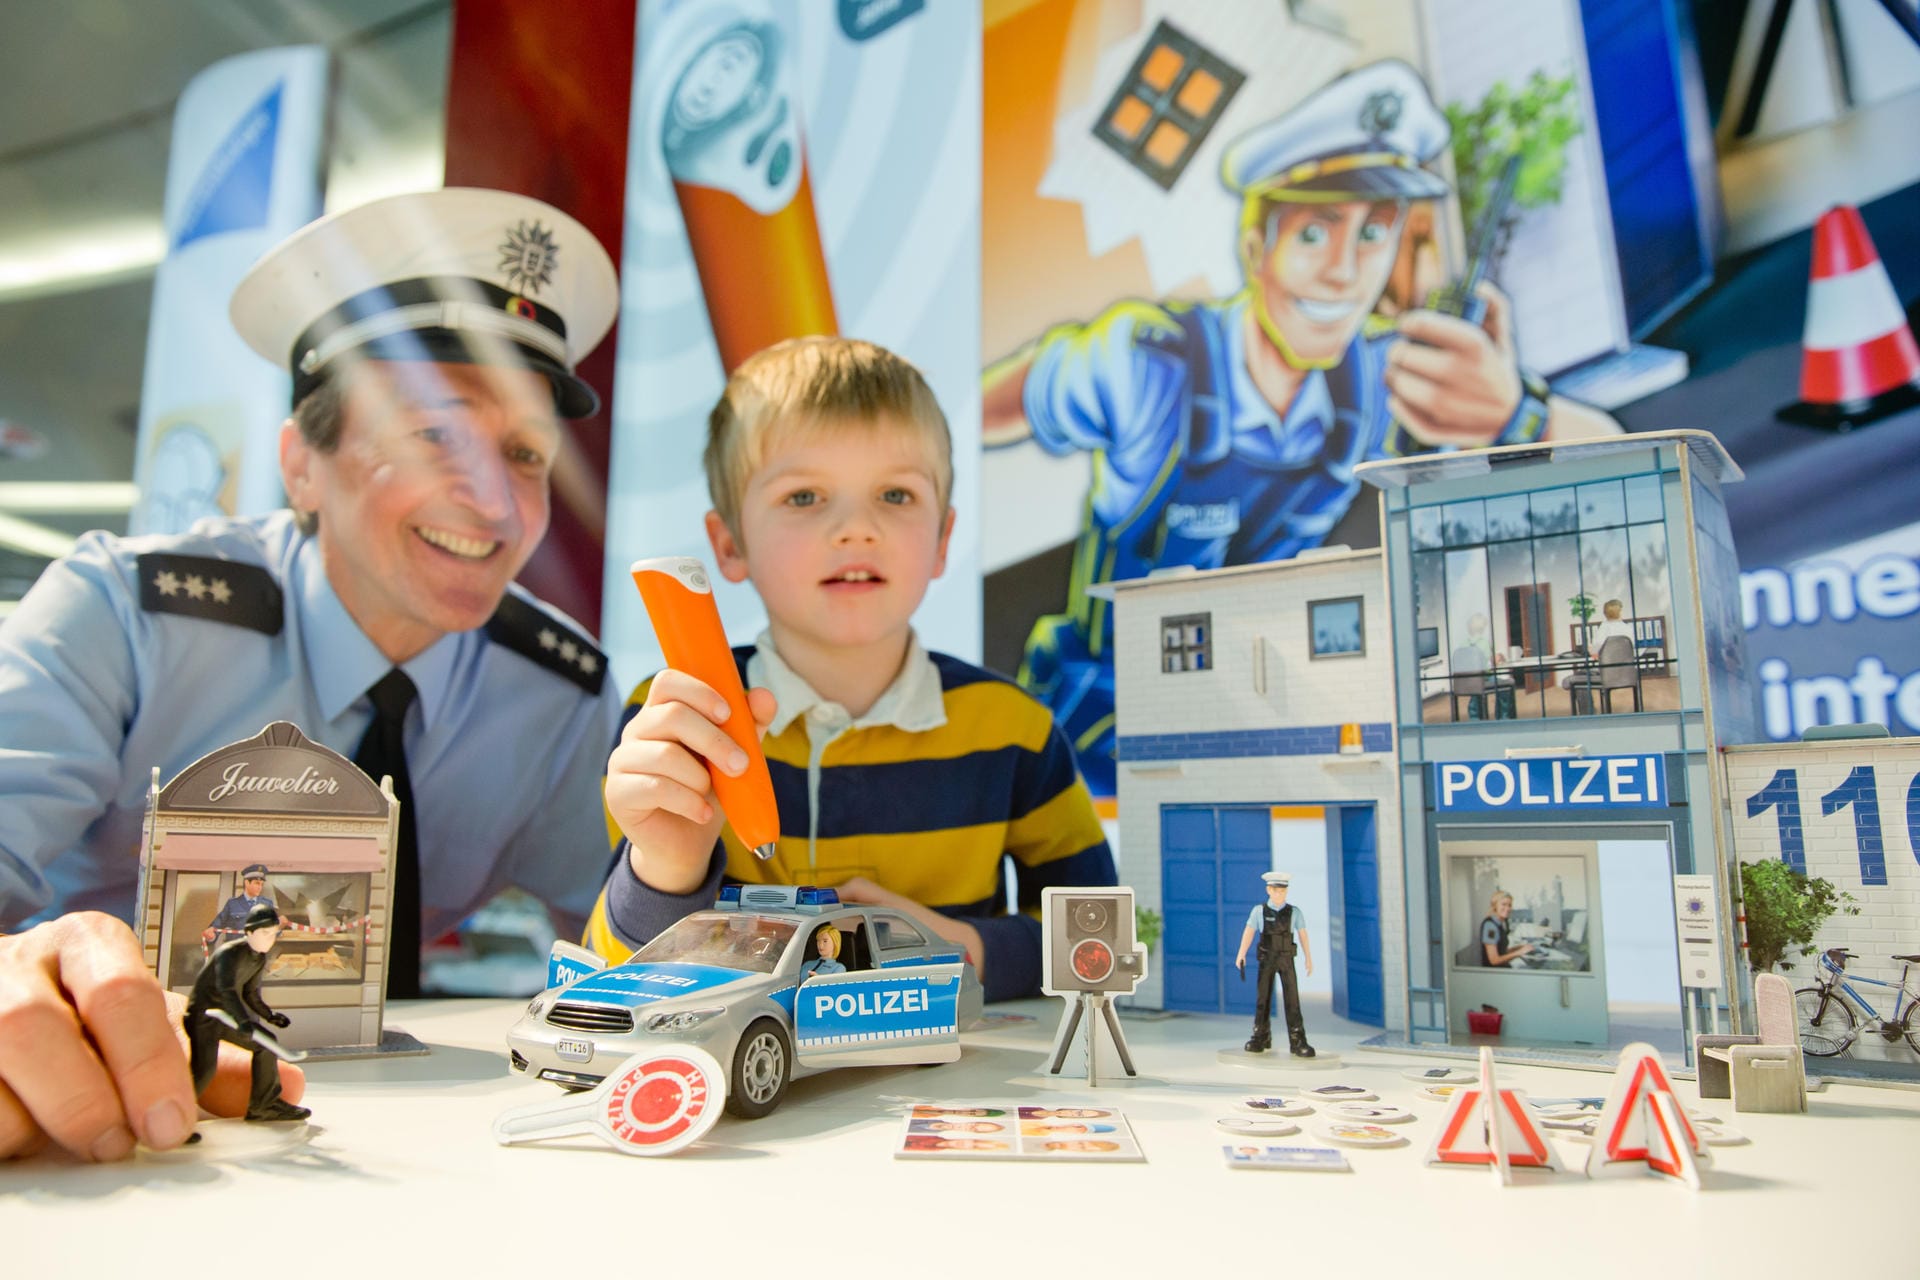 Spielwarenmesse 2016: "tiptoi Spielwelt Polizei"